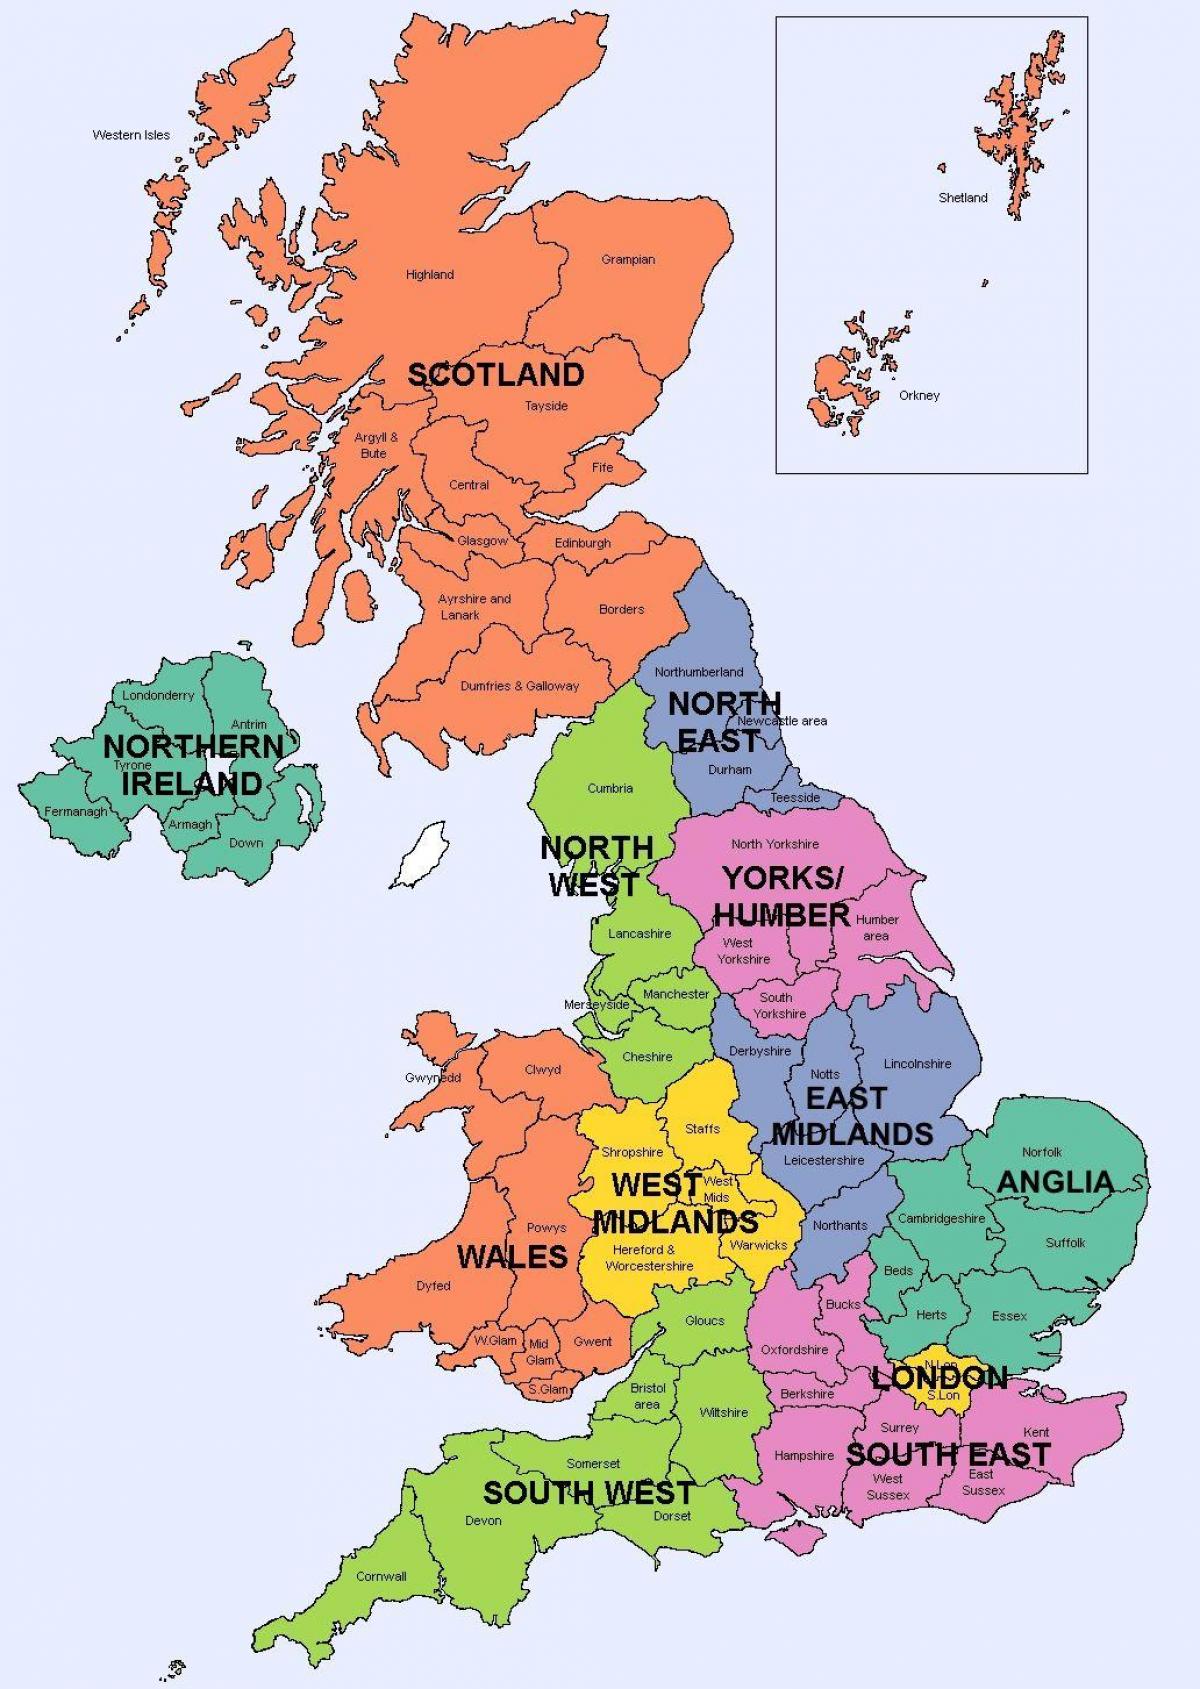 Mapa de las regiones del Reino Unido (UK) mapa político y estatal del